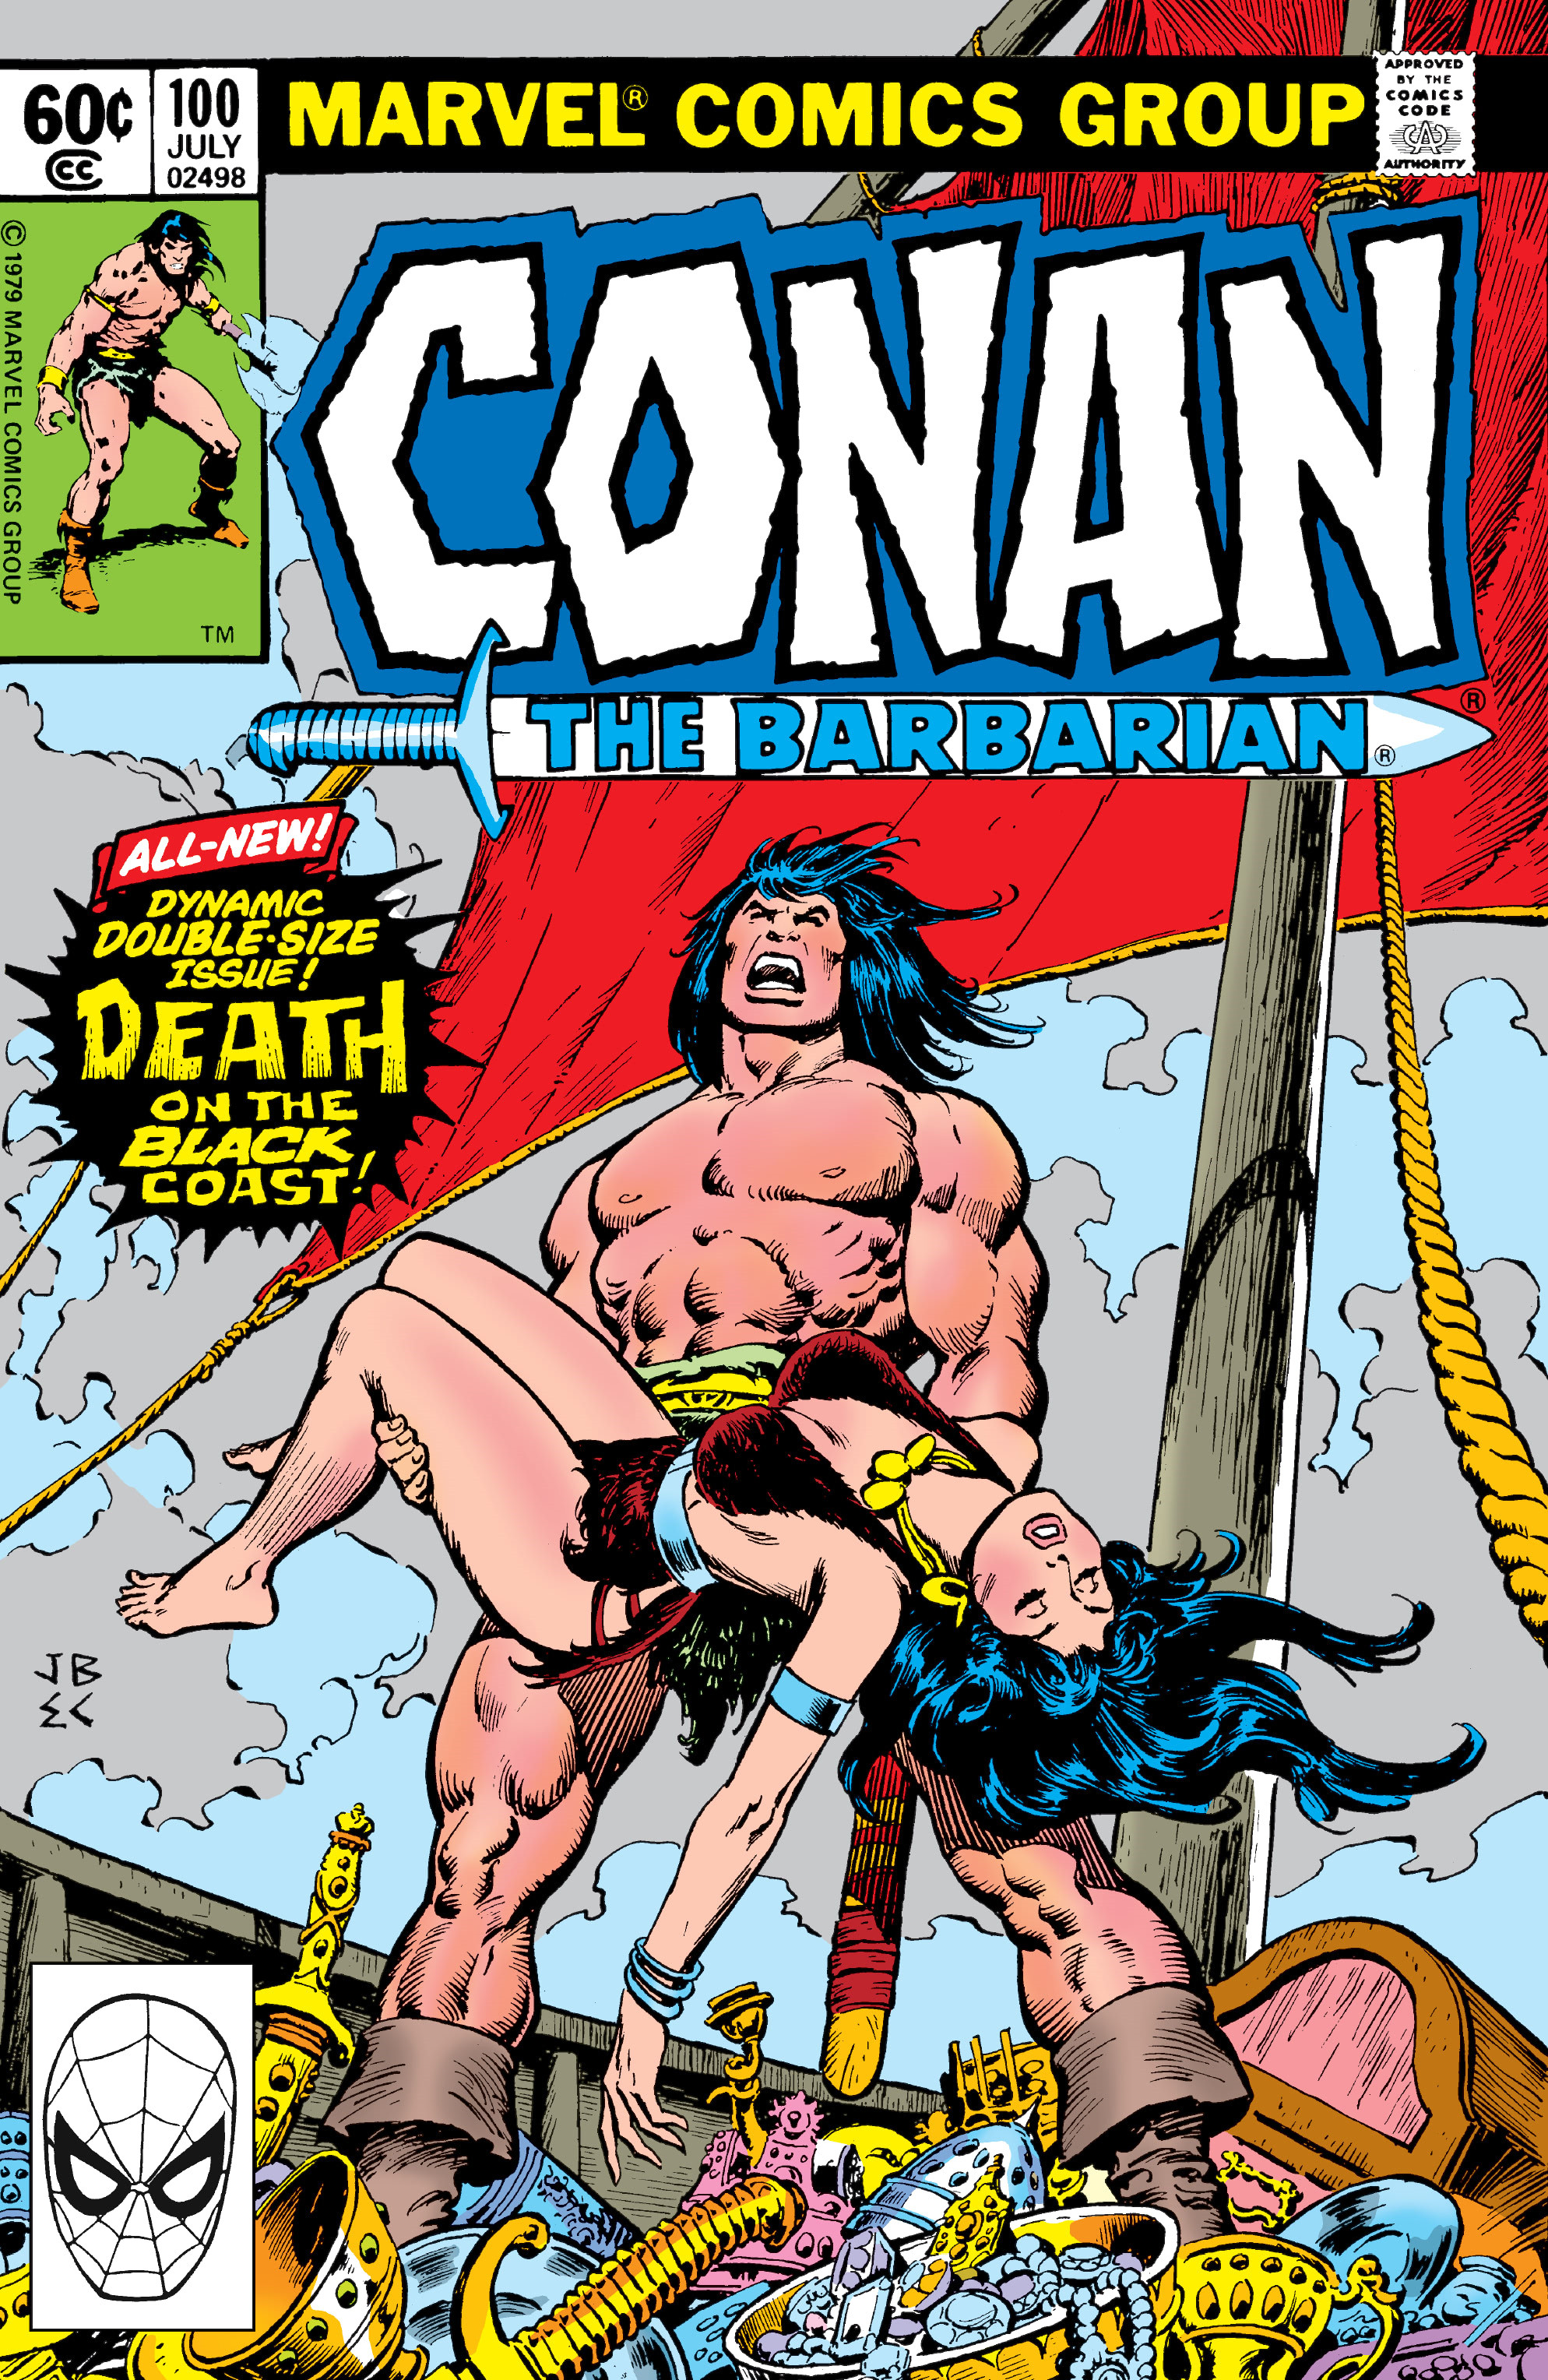 conan the barbarian cover art